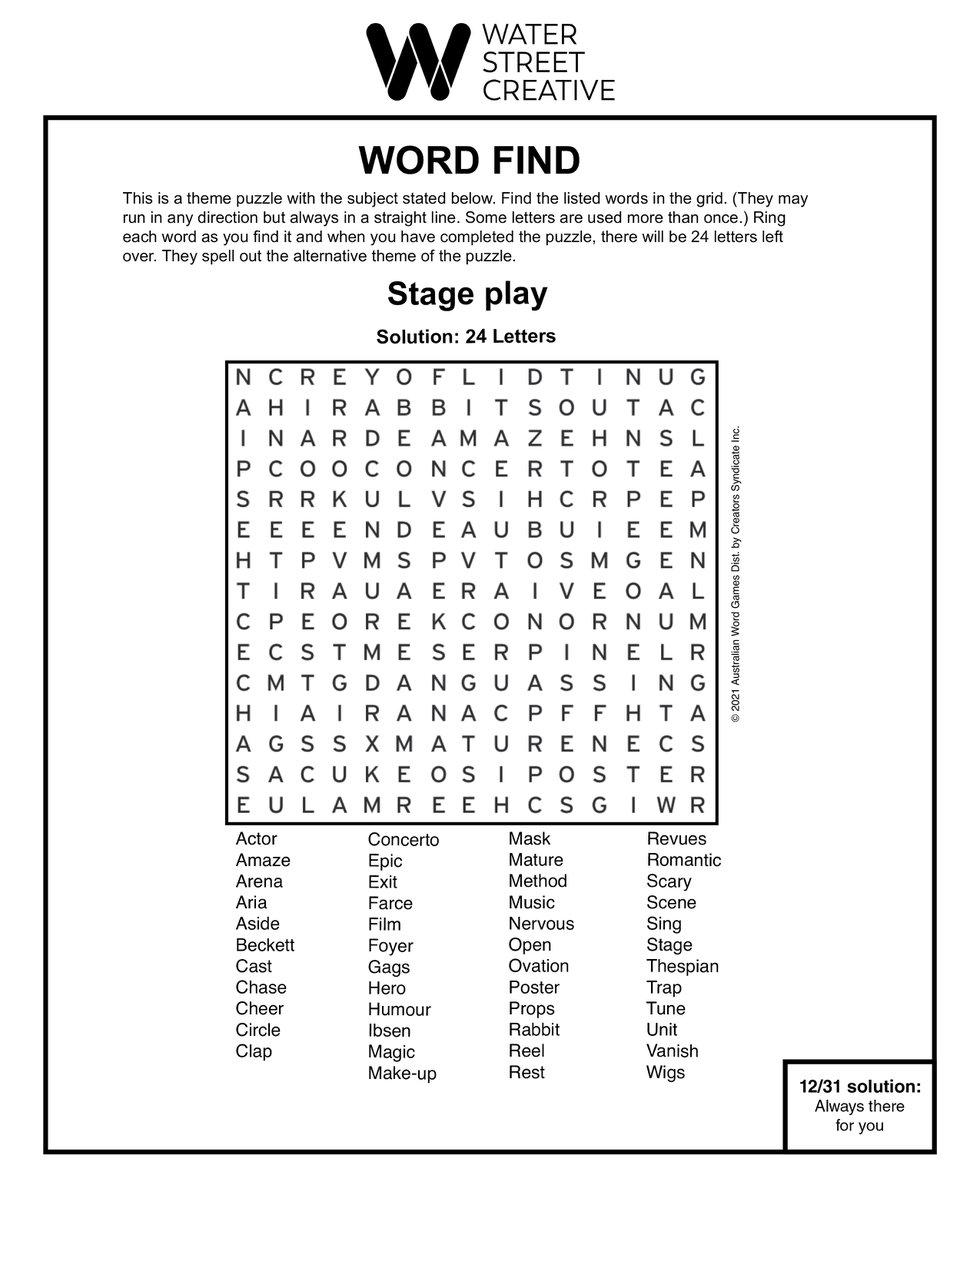 Word Find Week of Jan. 7, 2021 Shepherd Express